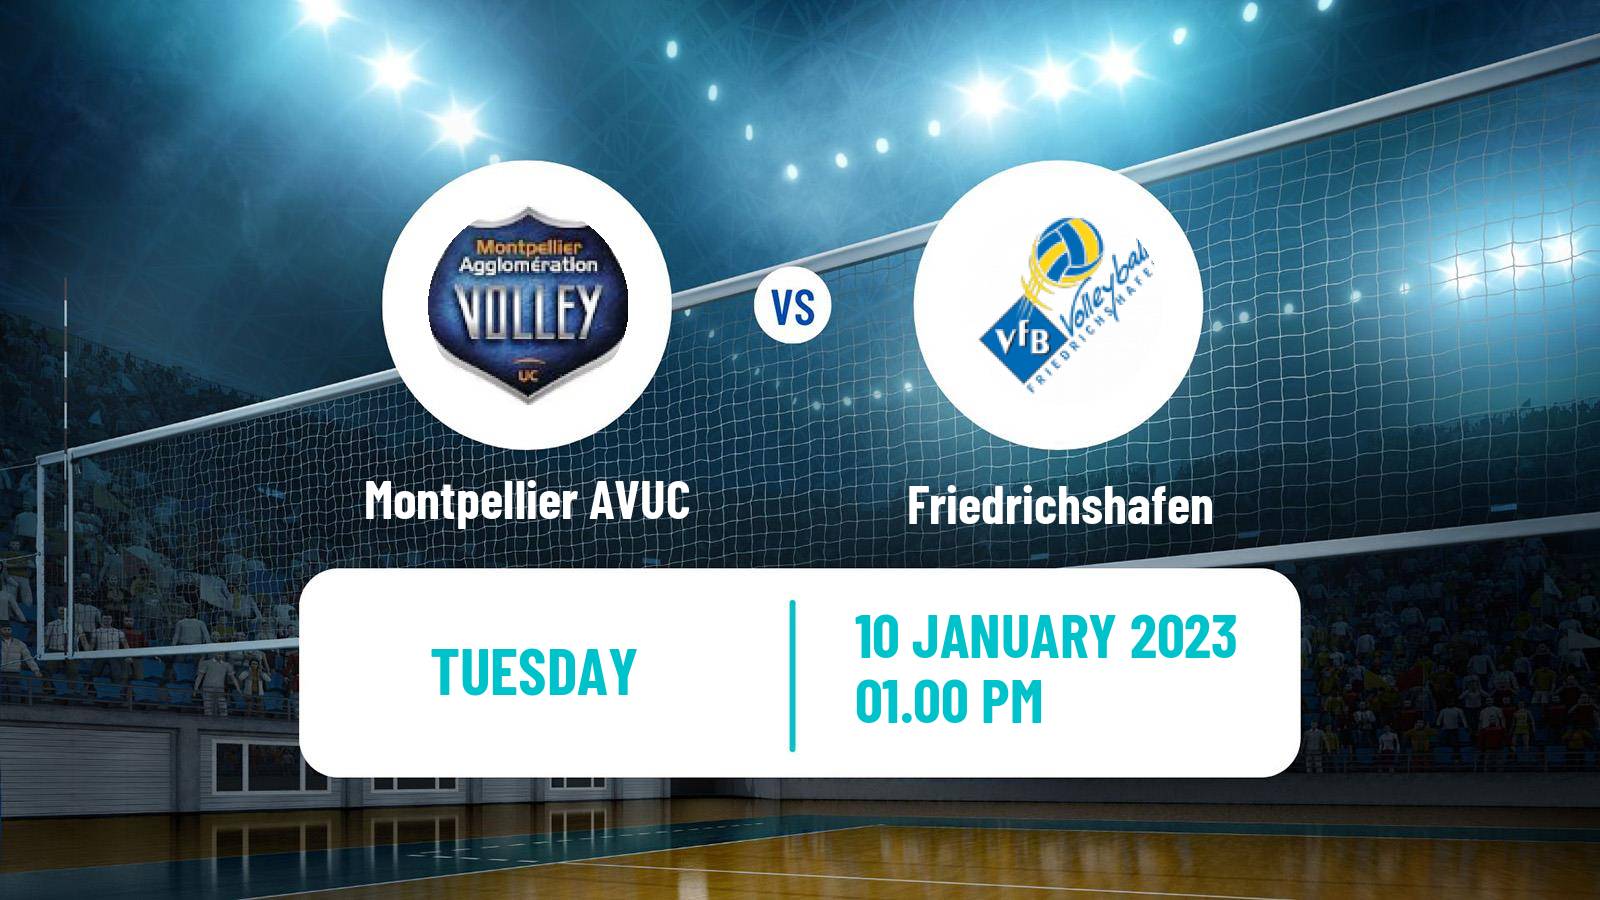 Volleyball CEV Champions League Montpellier AVUC - Friedrichshafen